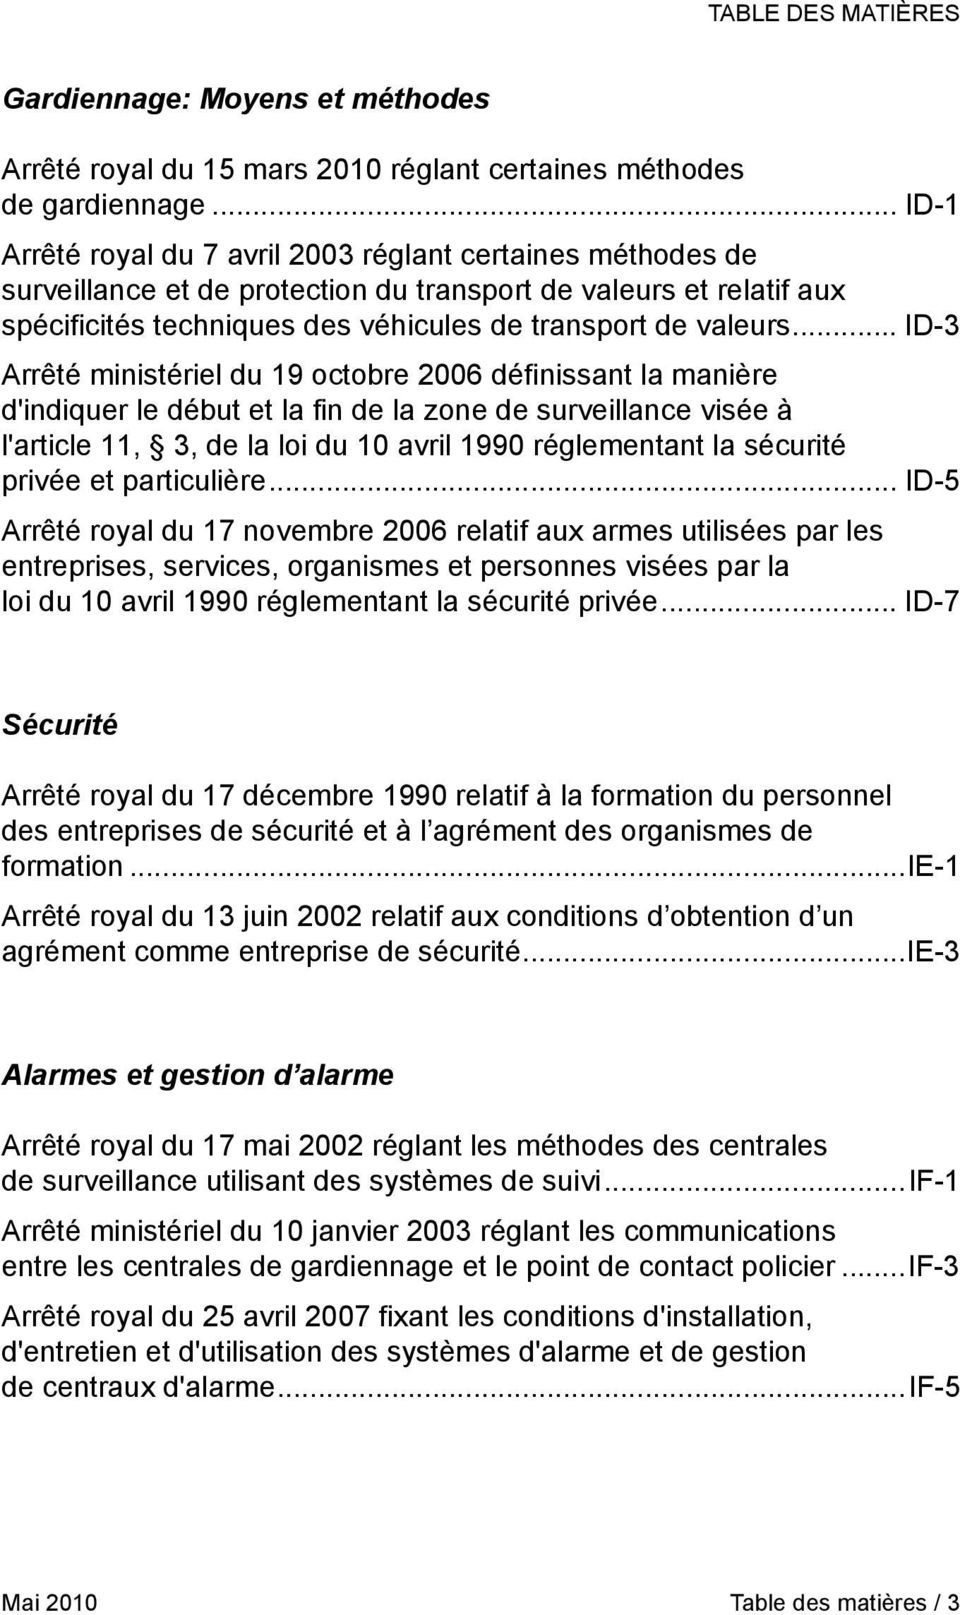 .. ID-3 Arrêté ministériel du 19 octobre 2006 définissant la manière d'indiquer le début et la fin de la zone de surveillance visée à l'article 11, 3, de la loi du 10 avril 1990 réglementant la